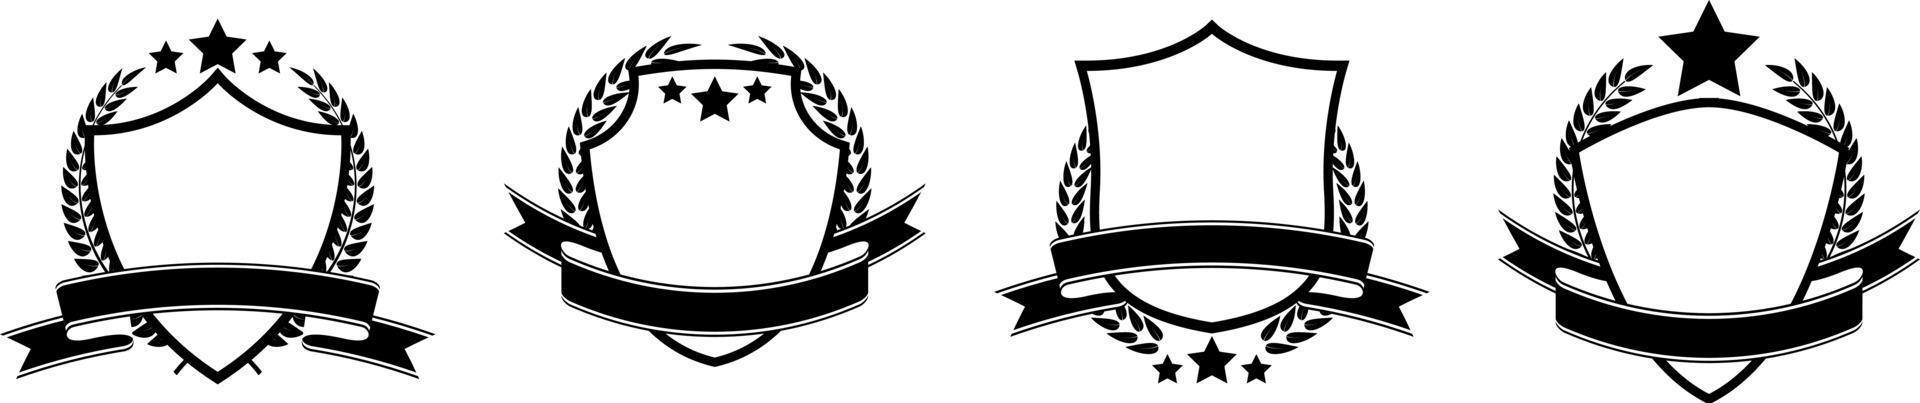 logotipo y emblema del escudo de silueta en estilo blanco y negro por diseño vectorial vector